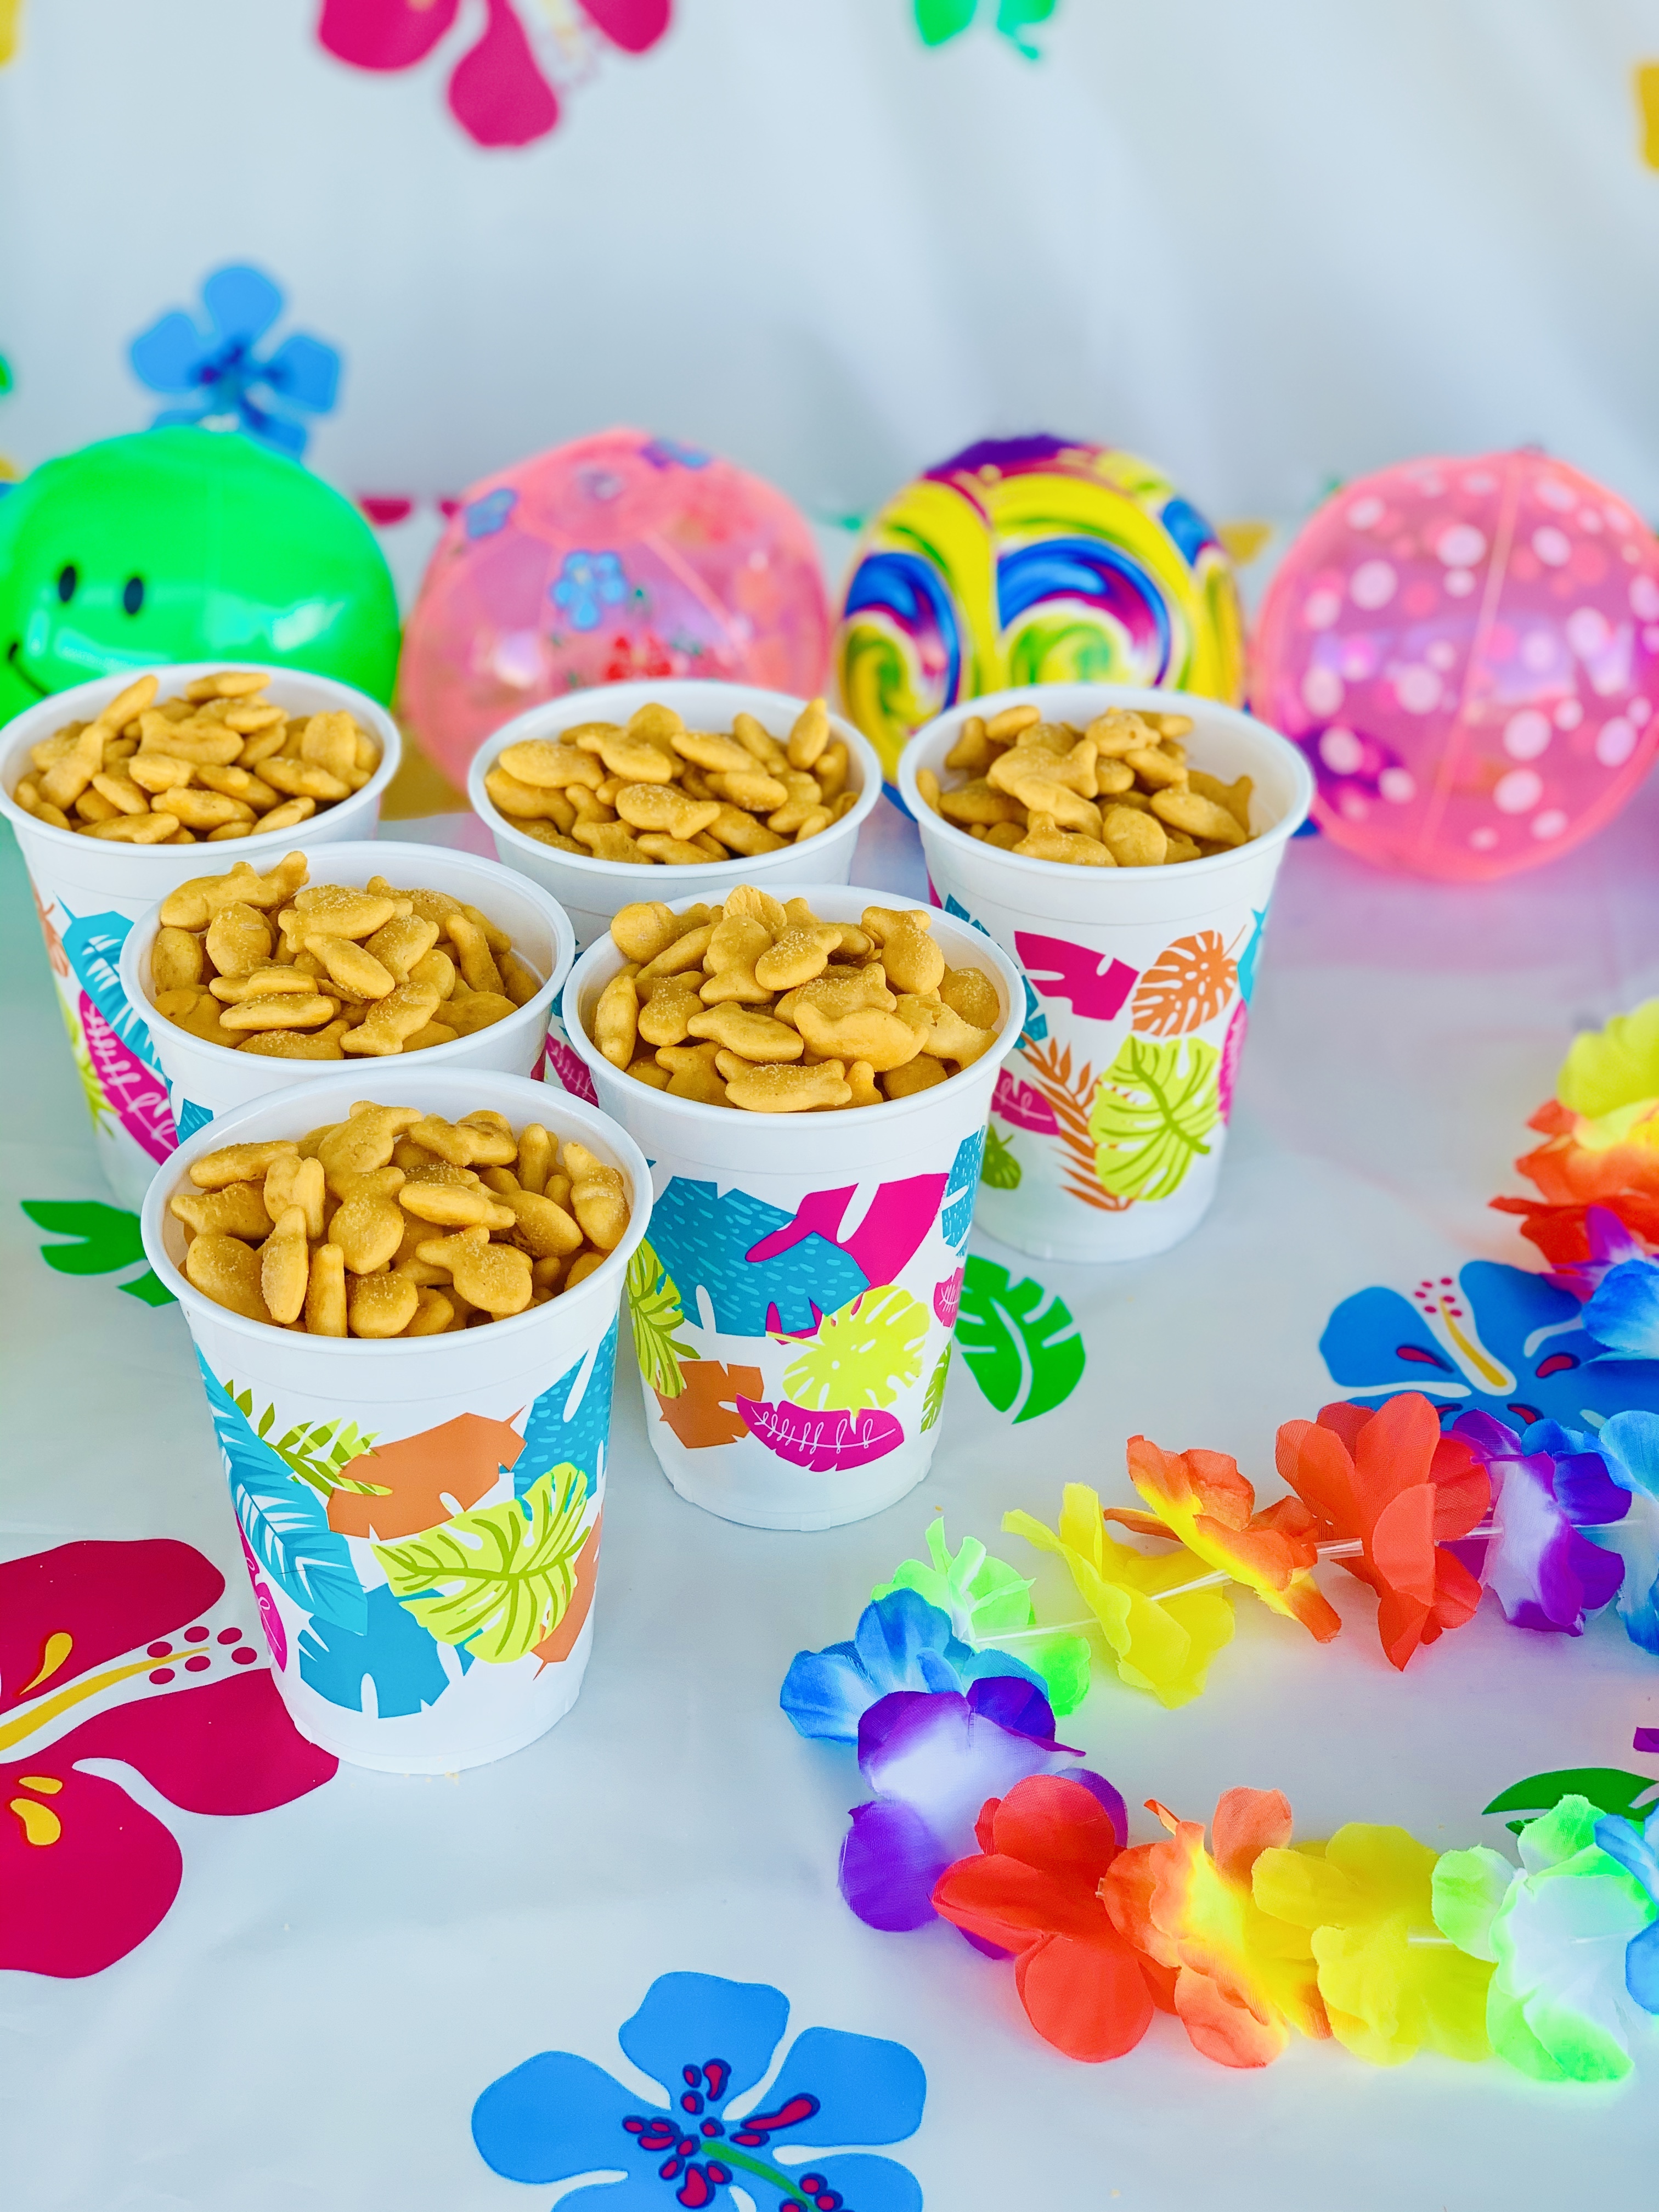 Luau Party Supplies, Kids Party Idea